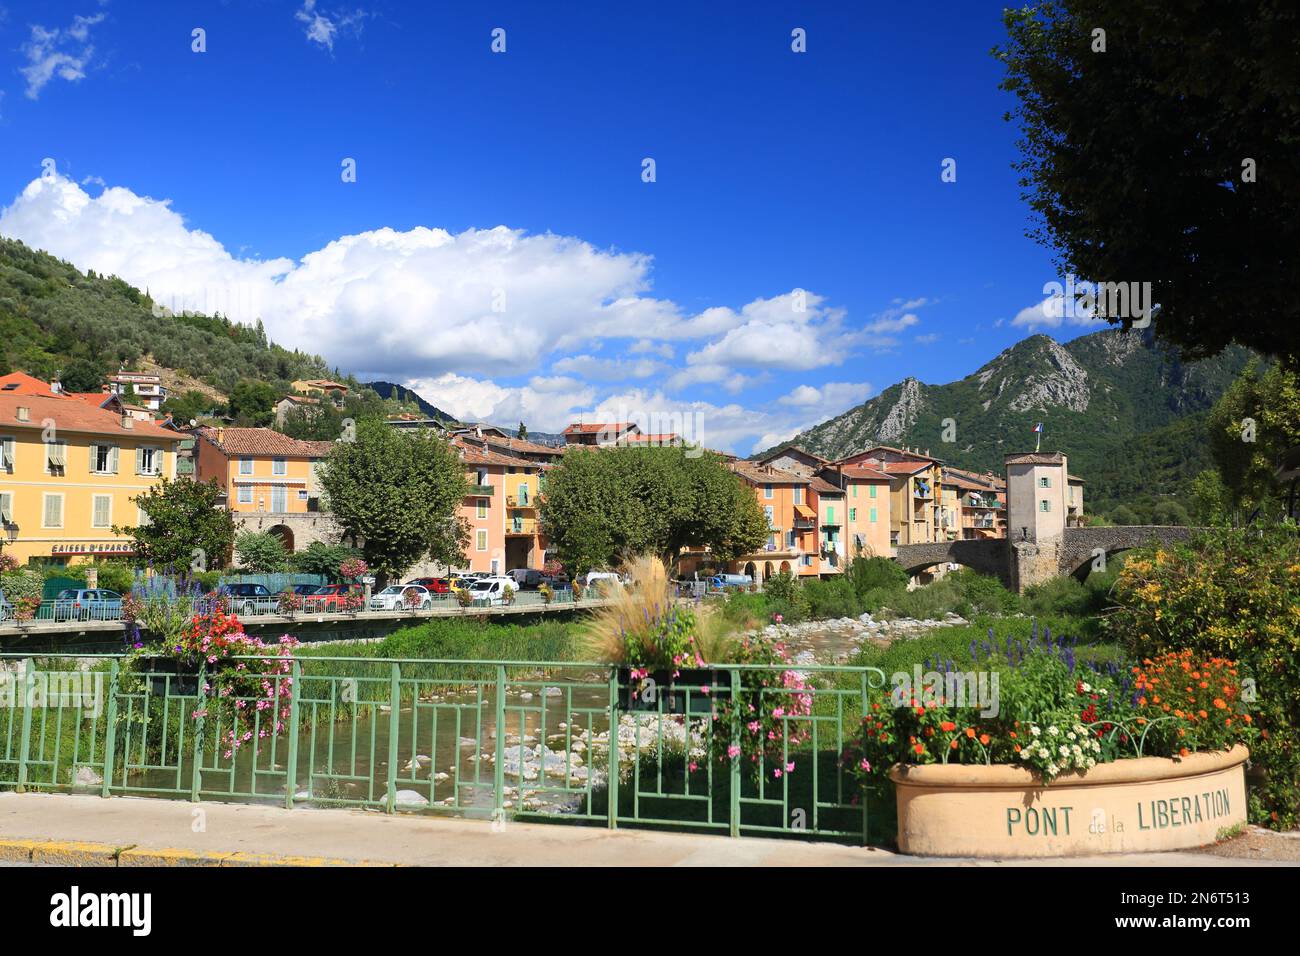 Sospel, vallee de la Bevera, Alpes Maritimes, 06, Cote d'Azur, France Stock Photo